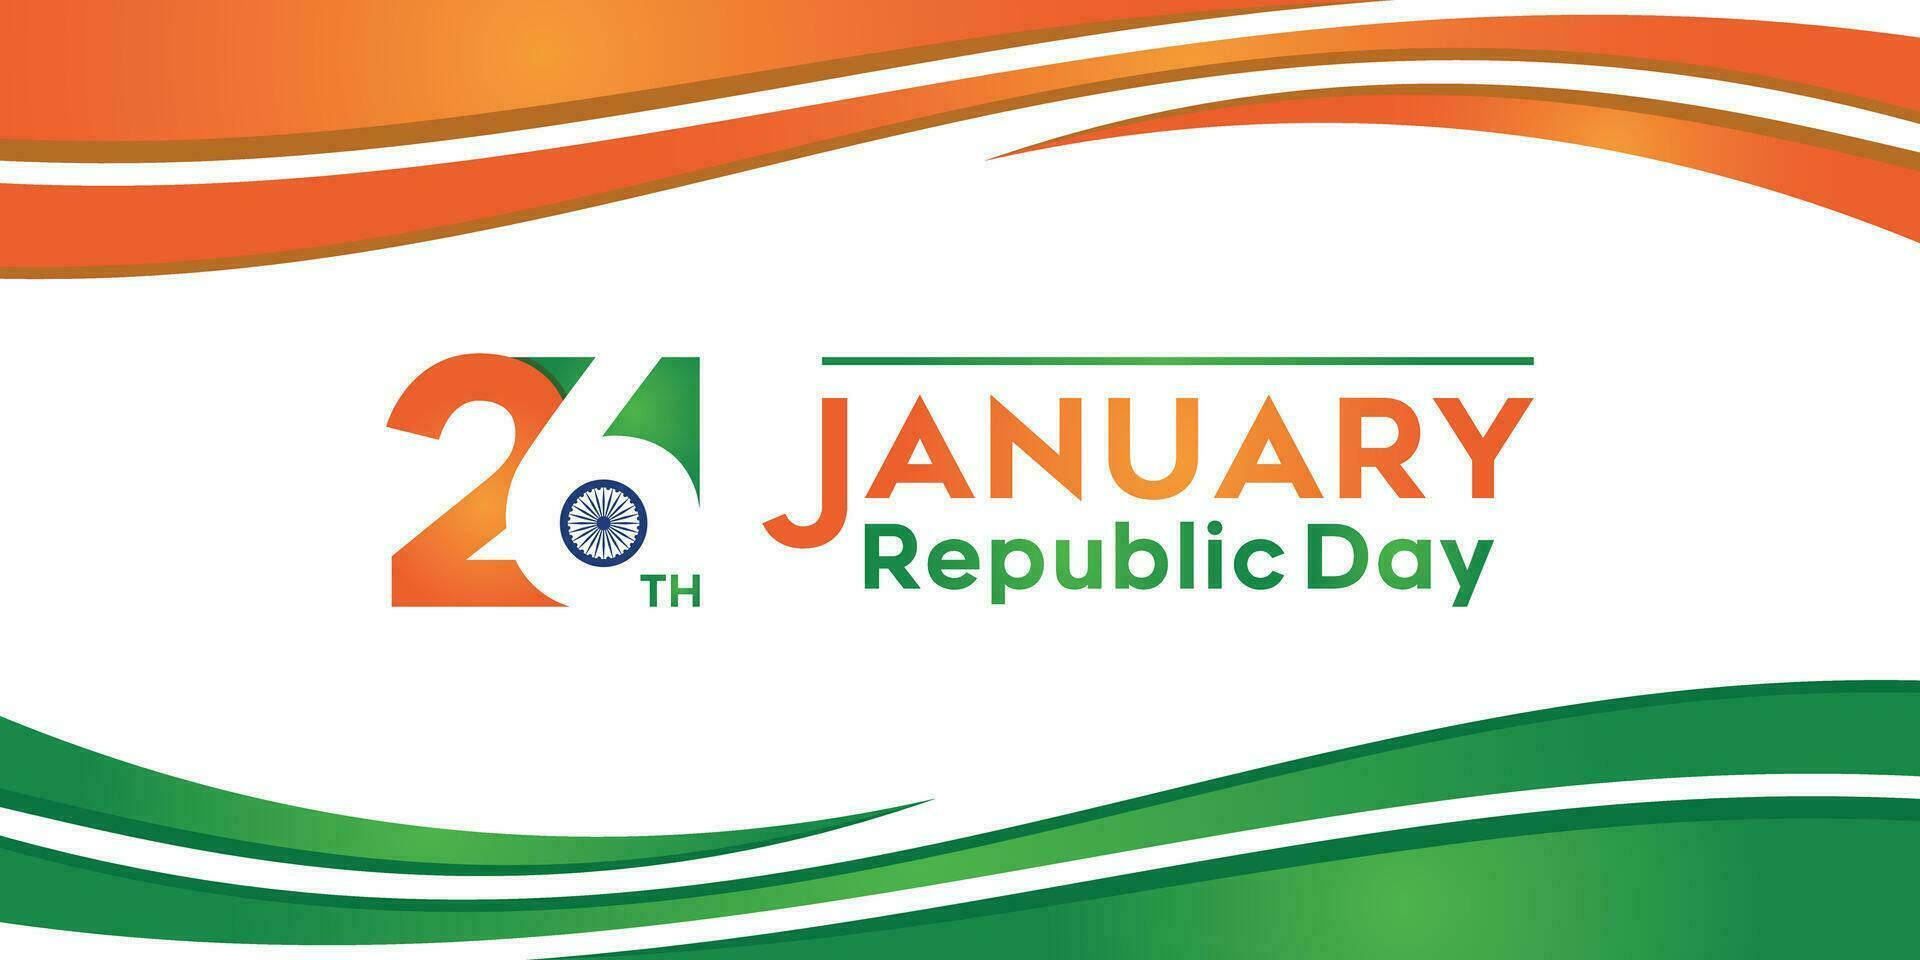 Indisch republiek dag concept met tekst 26 januari. vector illustratie